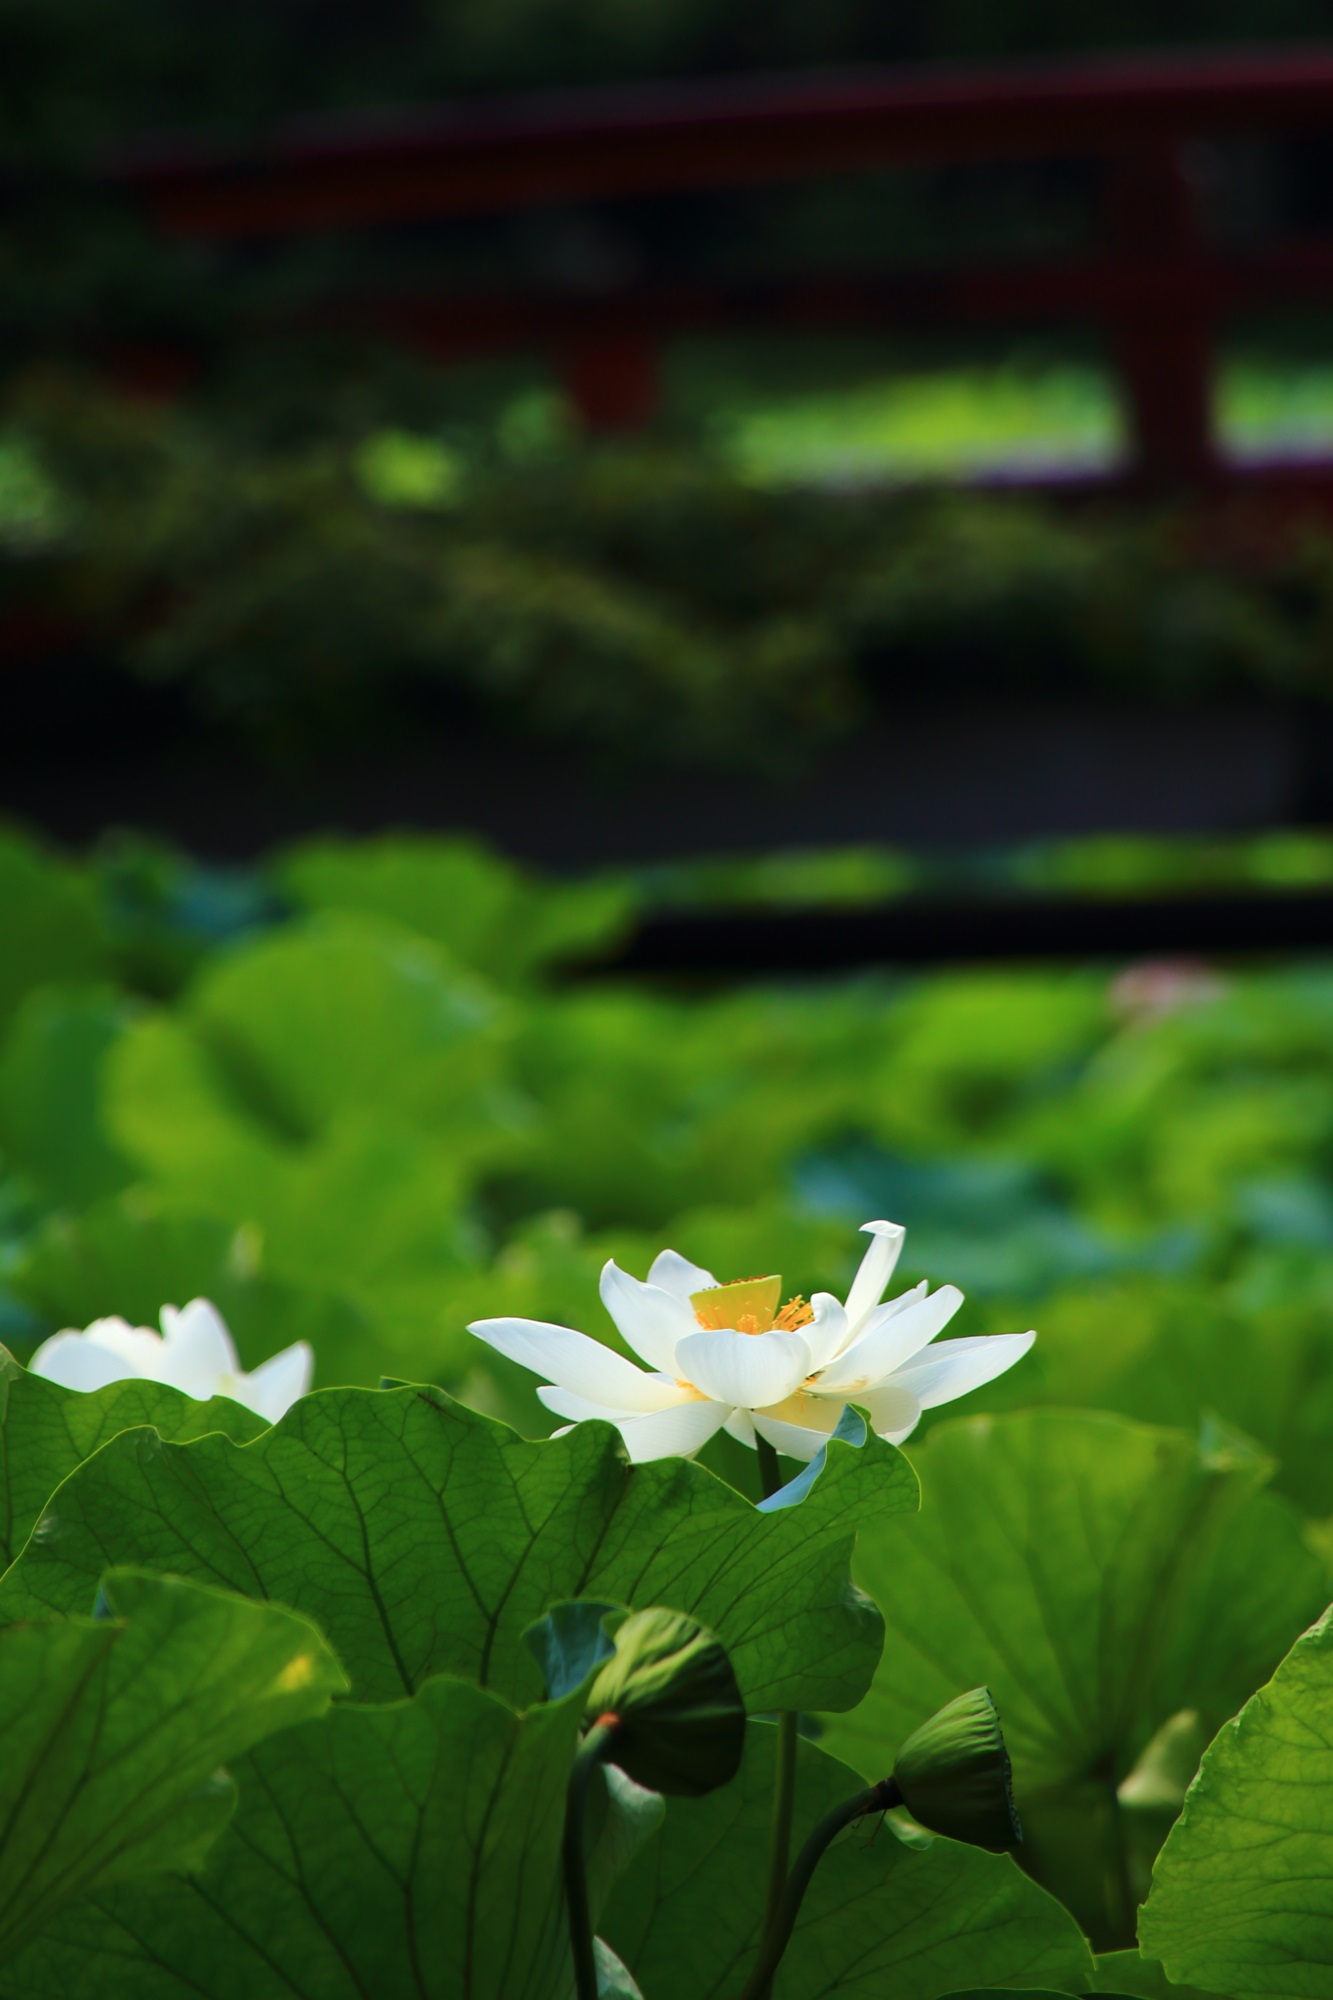 大覚寺の緑の葉の上で揺らめくほのかに輝く白い蓮の花